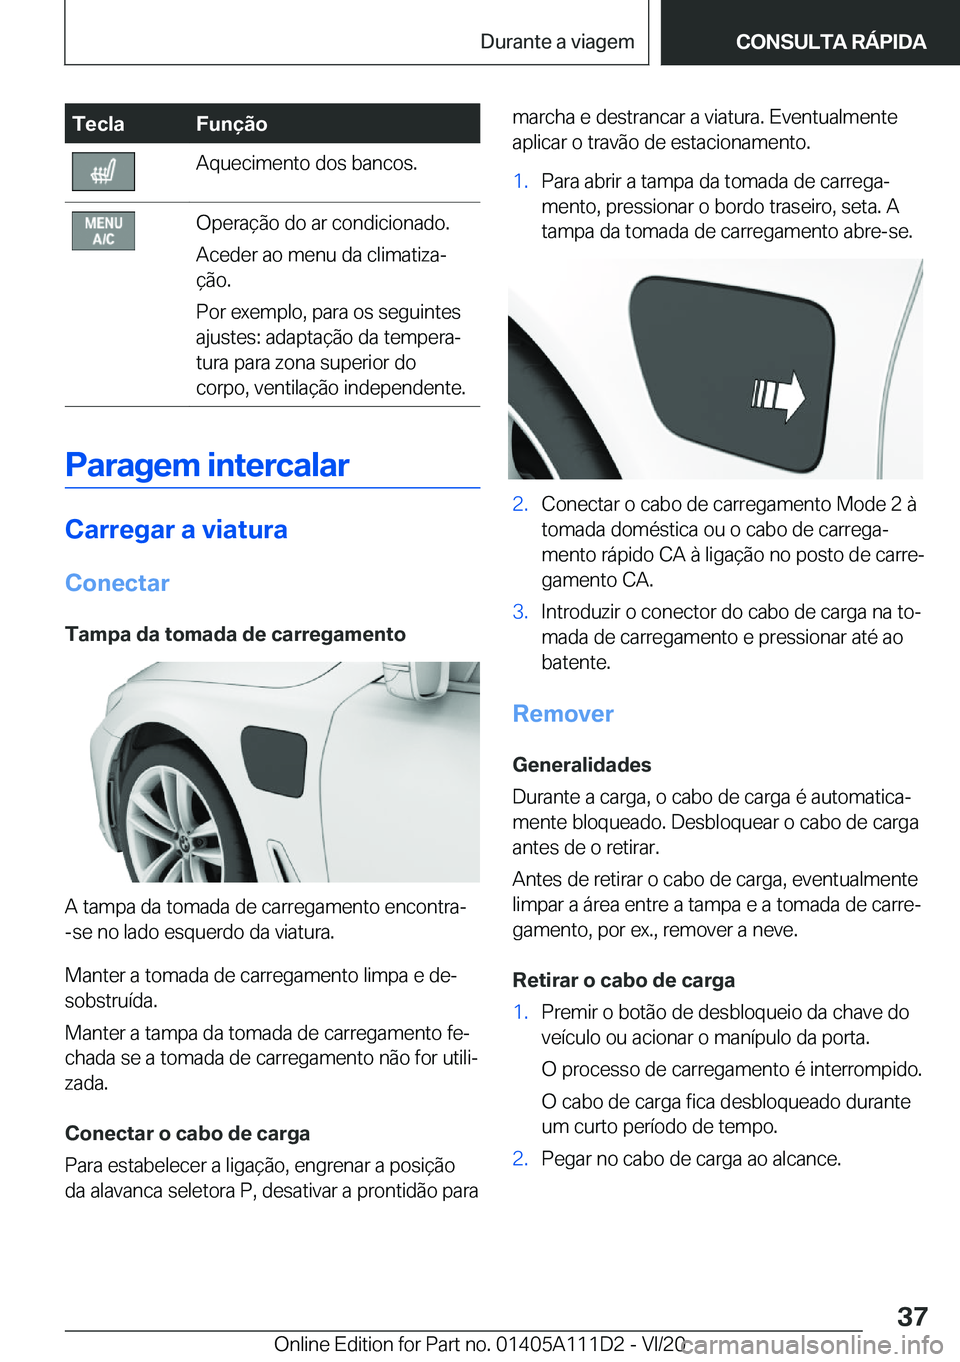 BMW 3 SERIES SEDAN PLUG-IN HYBRID 2021  Manual do condutor (in Portuguese) �T�e�c�l�a�F�u�n�